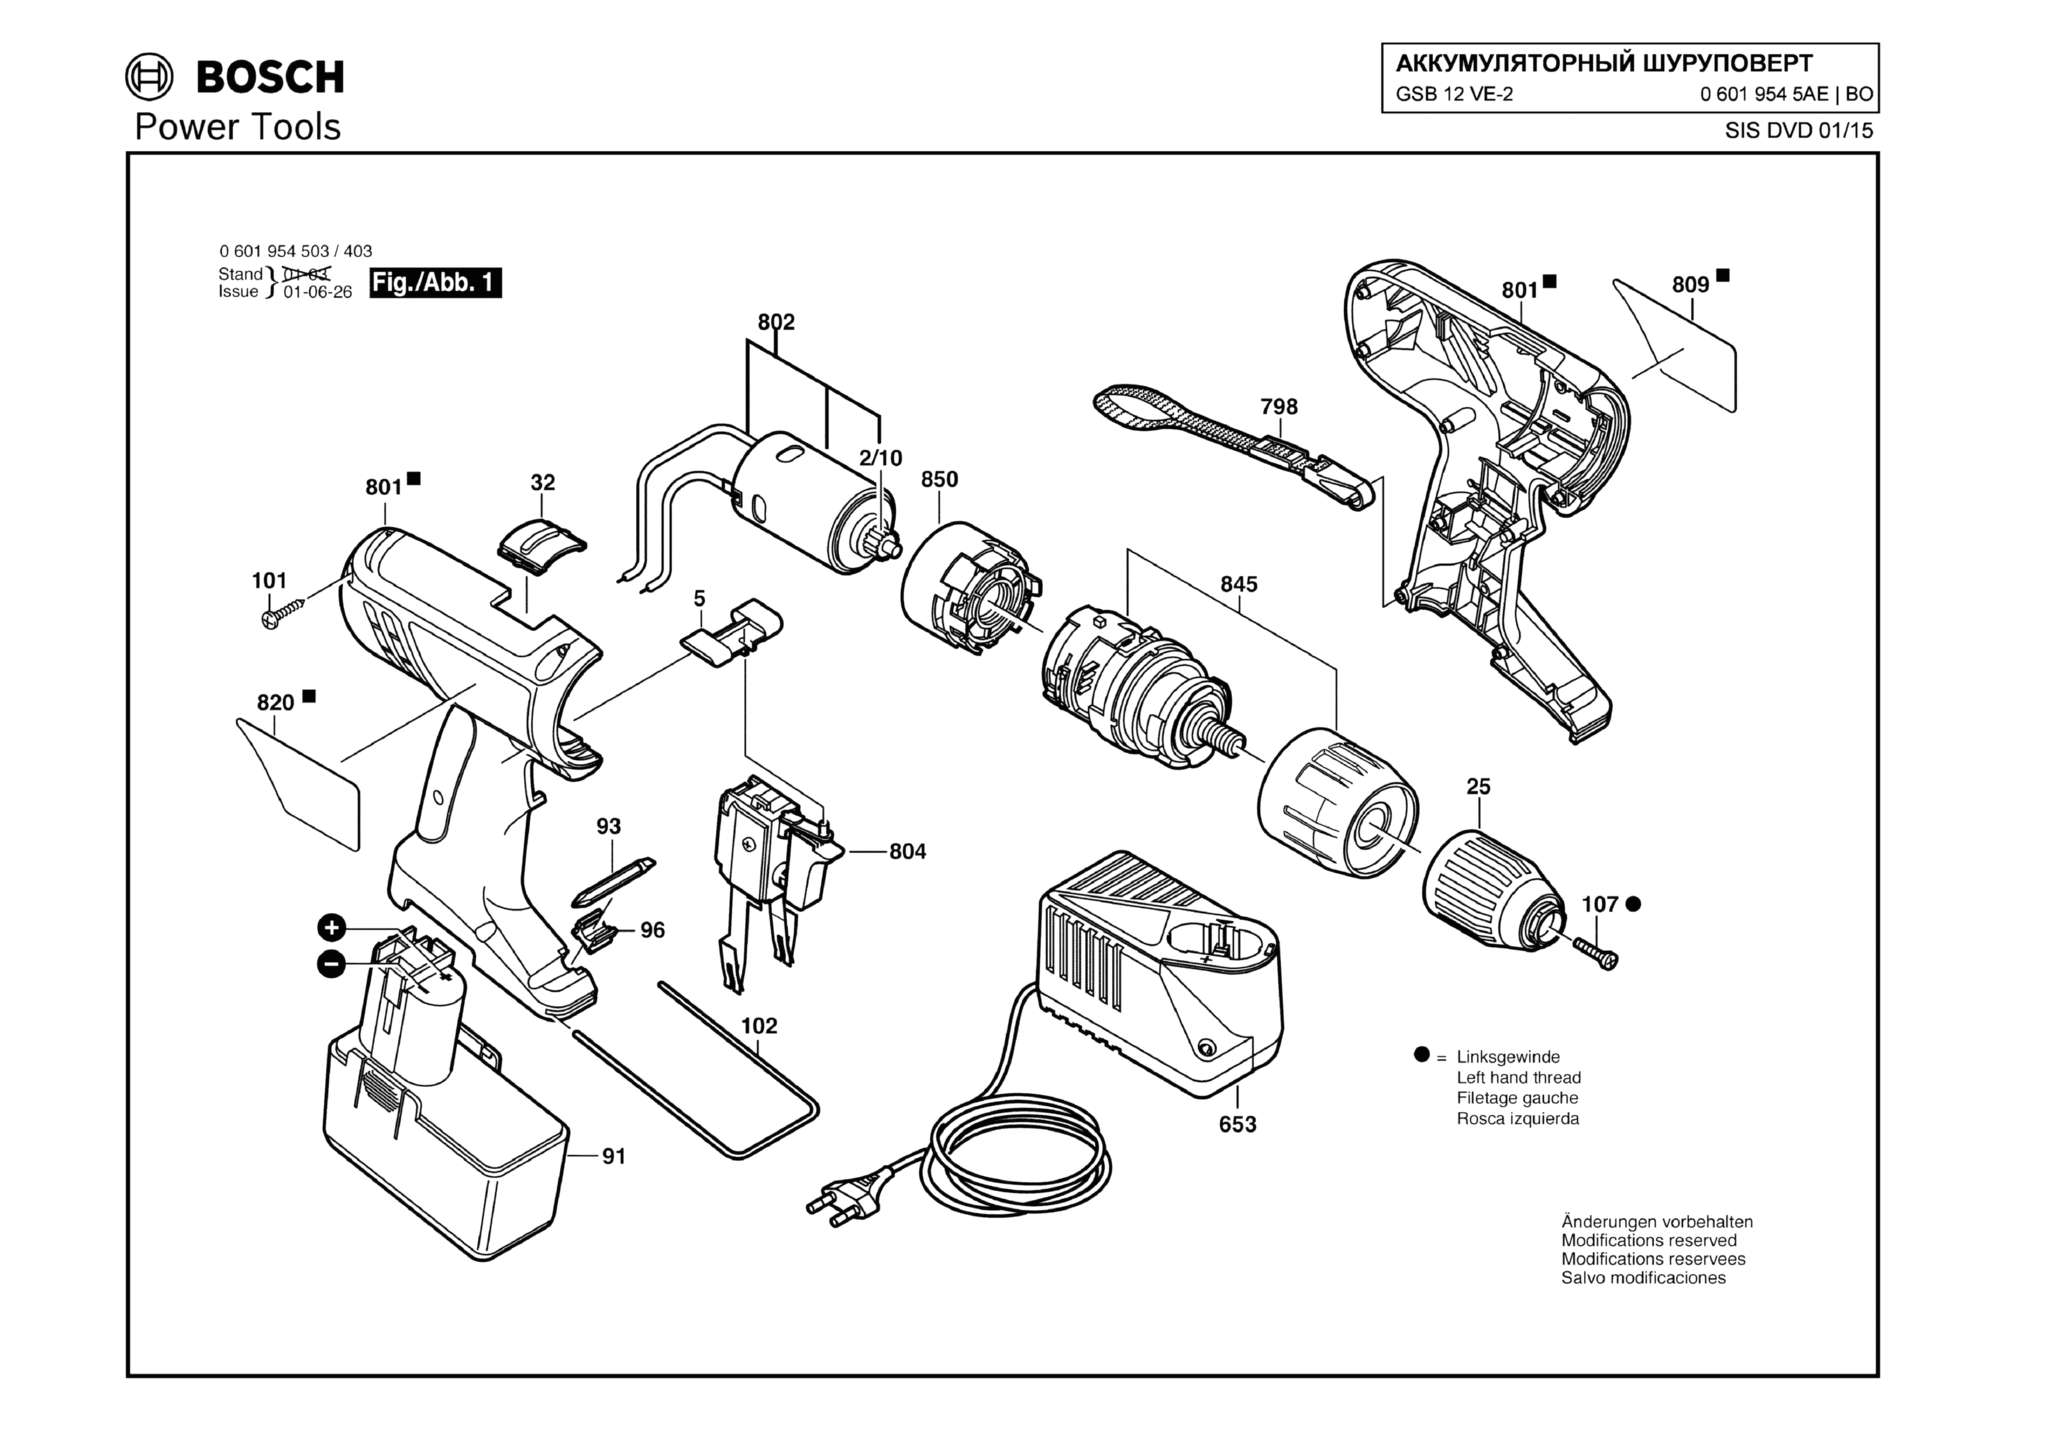 Запчасти, схема и деталировка Bosch GSB 12 VE-2 (ТИП 06019545AE)